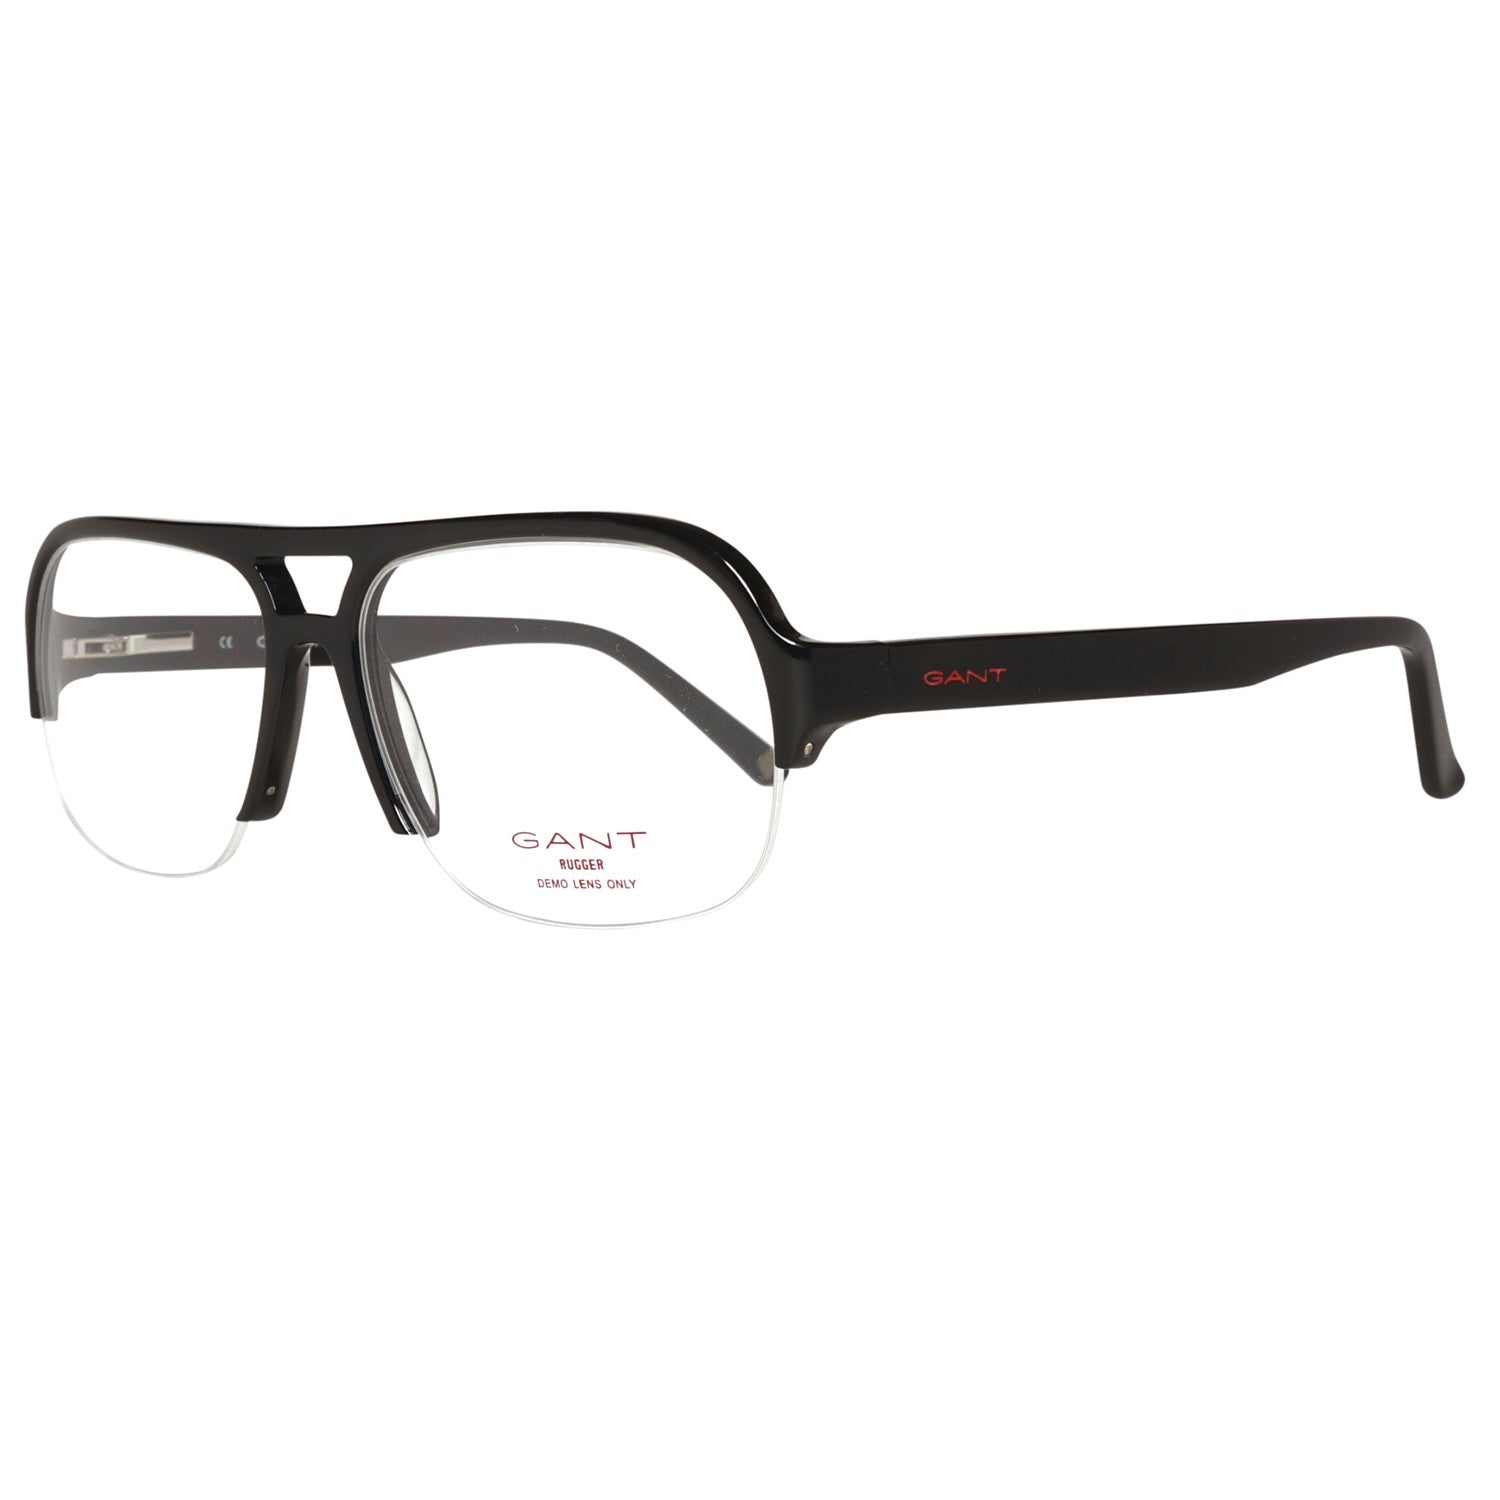 Gant Frames Gant Glasses Frames GRA078 B84 56 | GR KALB BLK 56 Eyeglasses Eyewear UK USA Australia 